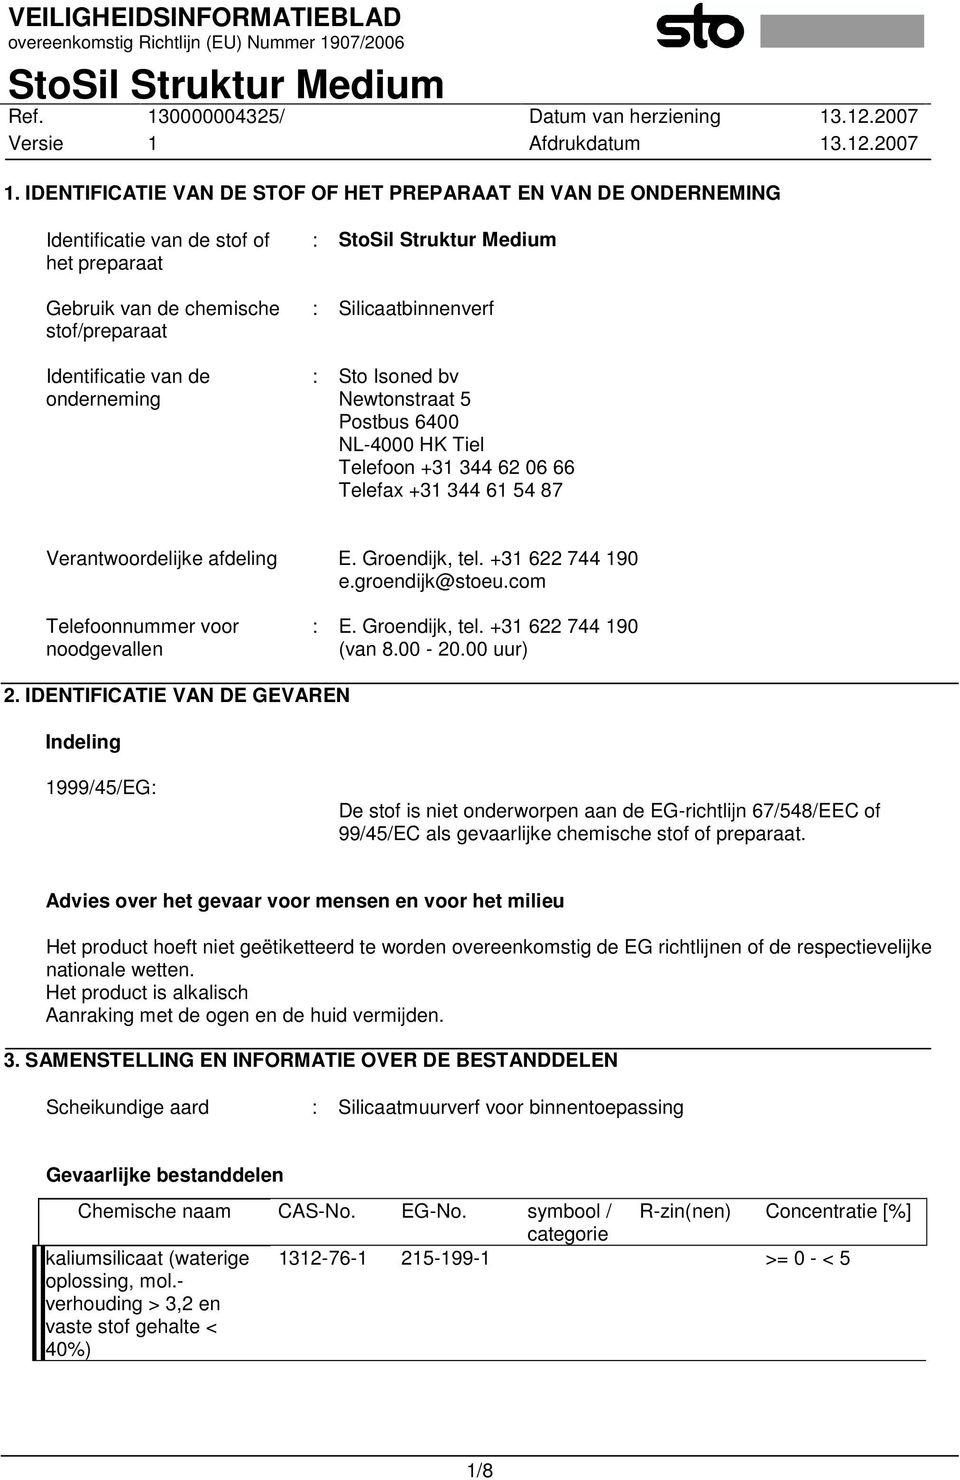 groendijk@stoeu.com Telefoonnummer voor noodgevallen : E. Groendijk, tel. +31 622 744 190 (van 8.00-20.00 uur) 2.